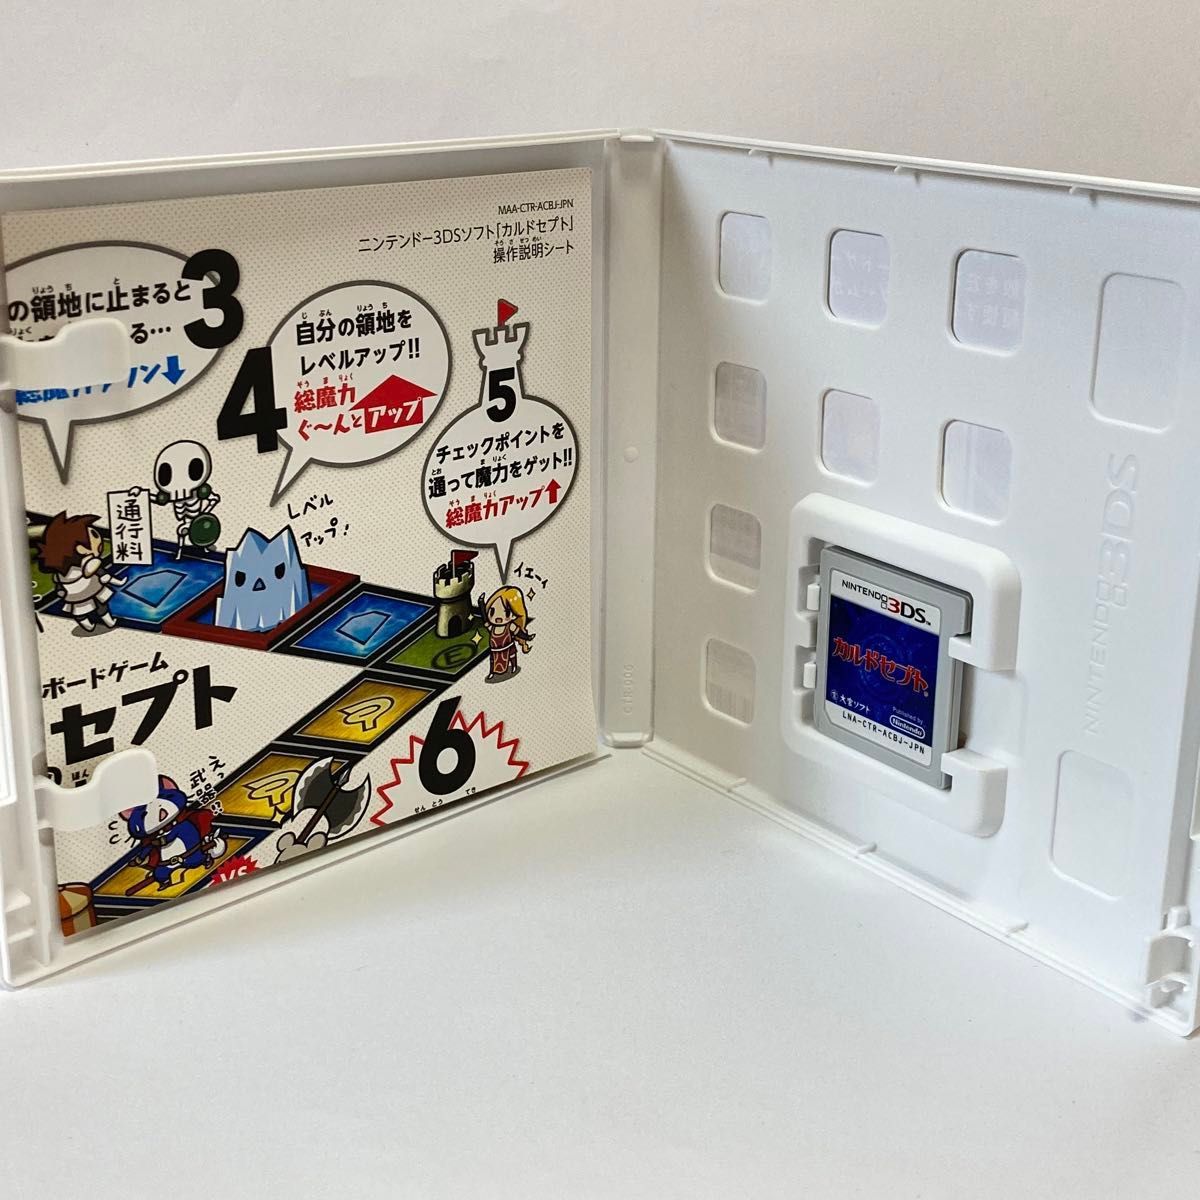 【3DS】 カルドセプト